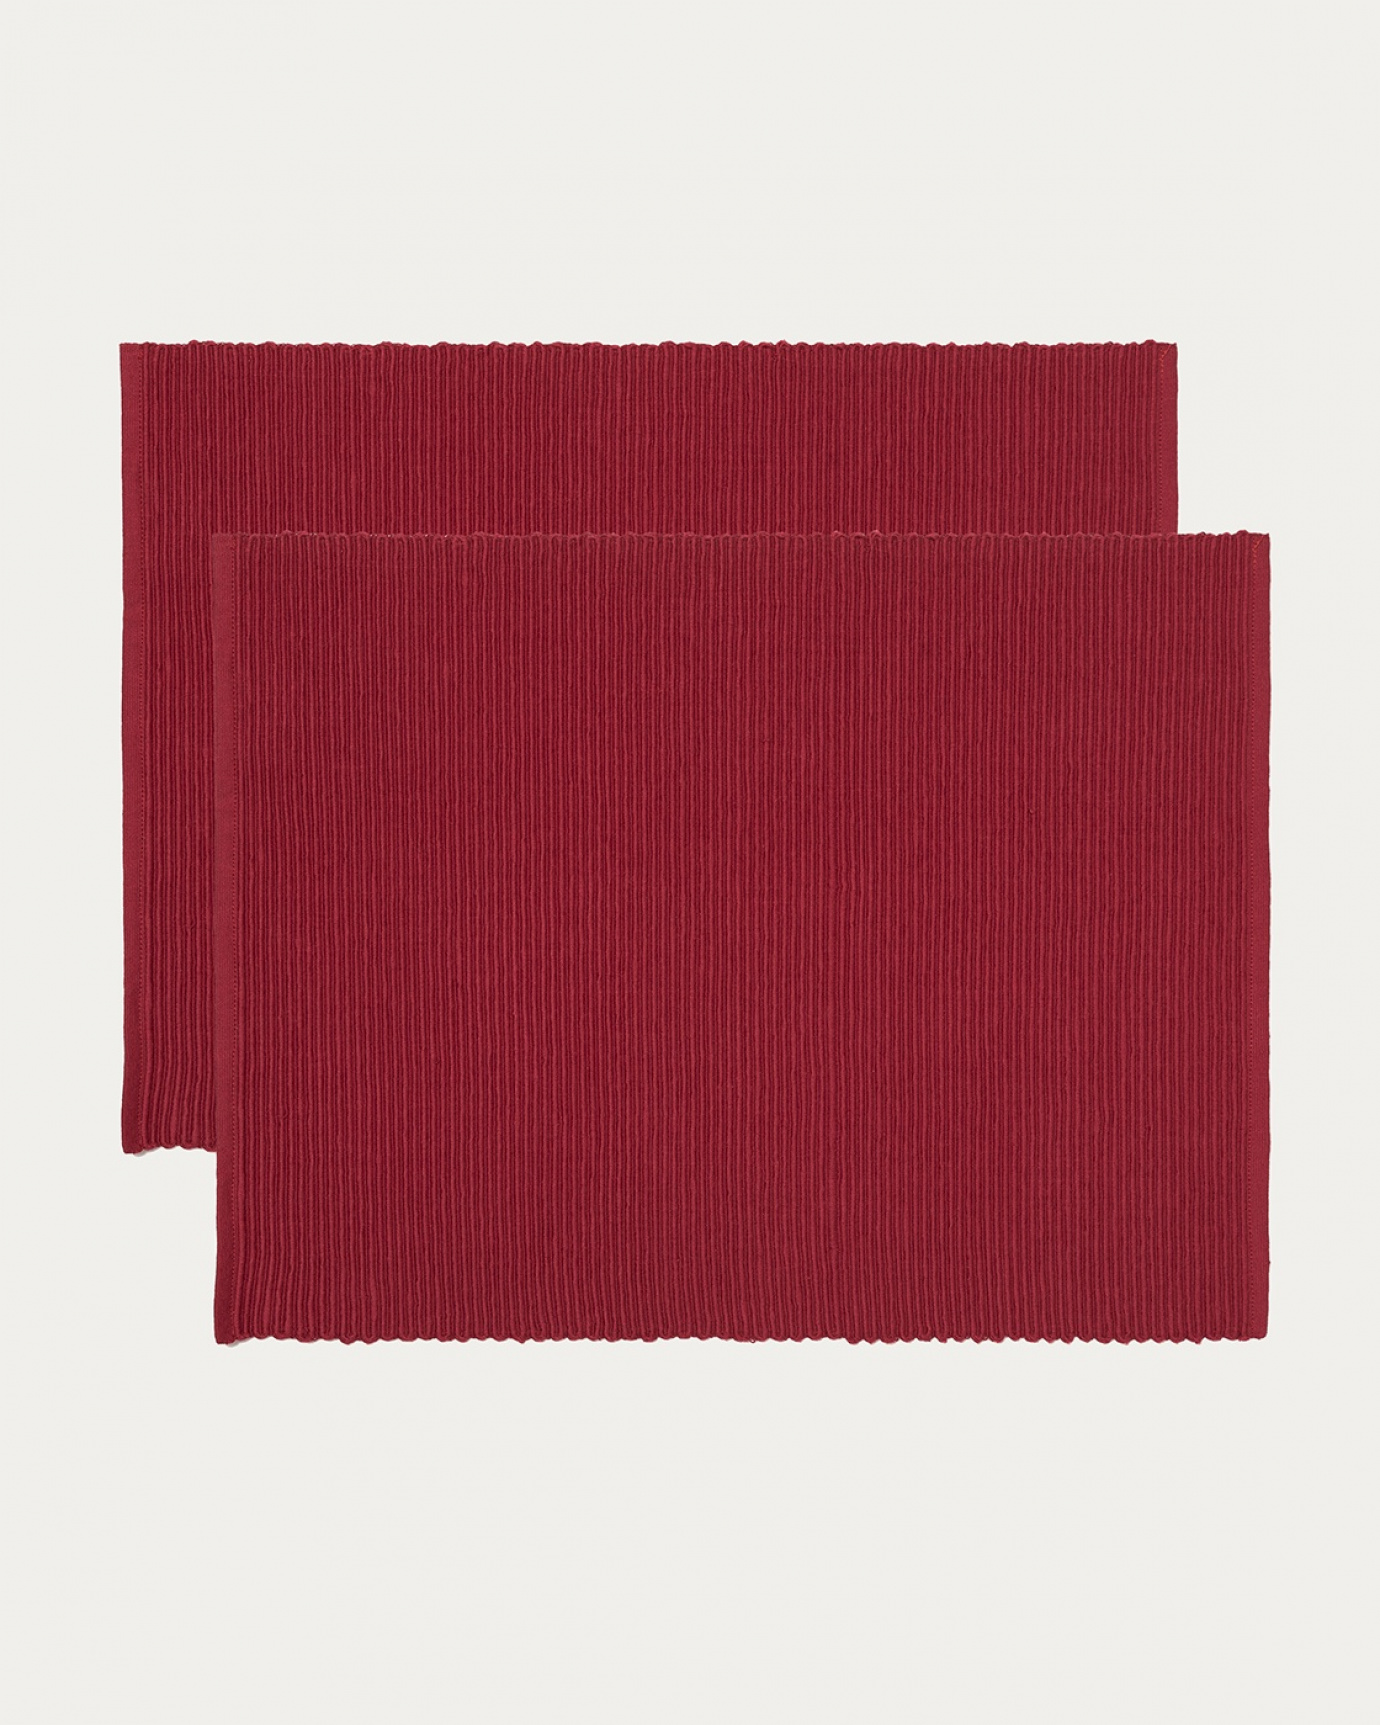 Immagine prodotto rosso tovaglietta UNI in morbido cotone a costine di qualità di LINUM DESIGN. Dimensioni 35x46 cm e venduto in 2-pezzi.